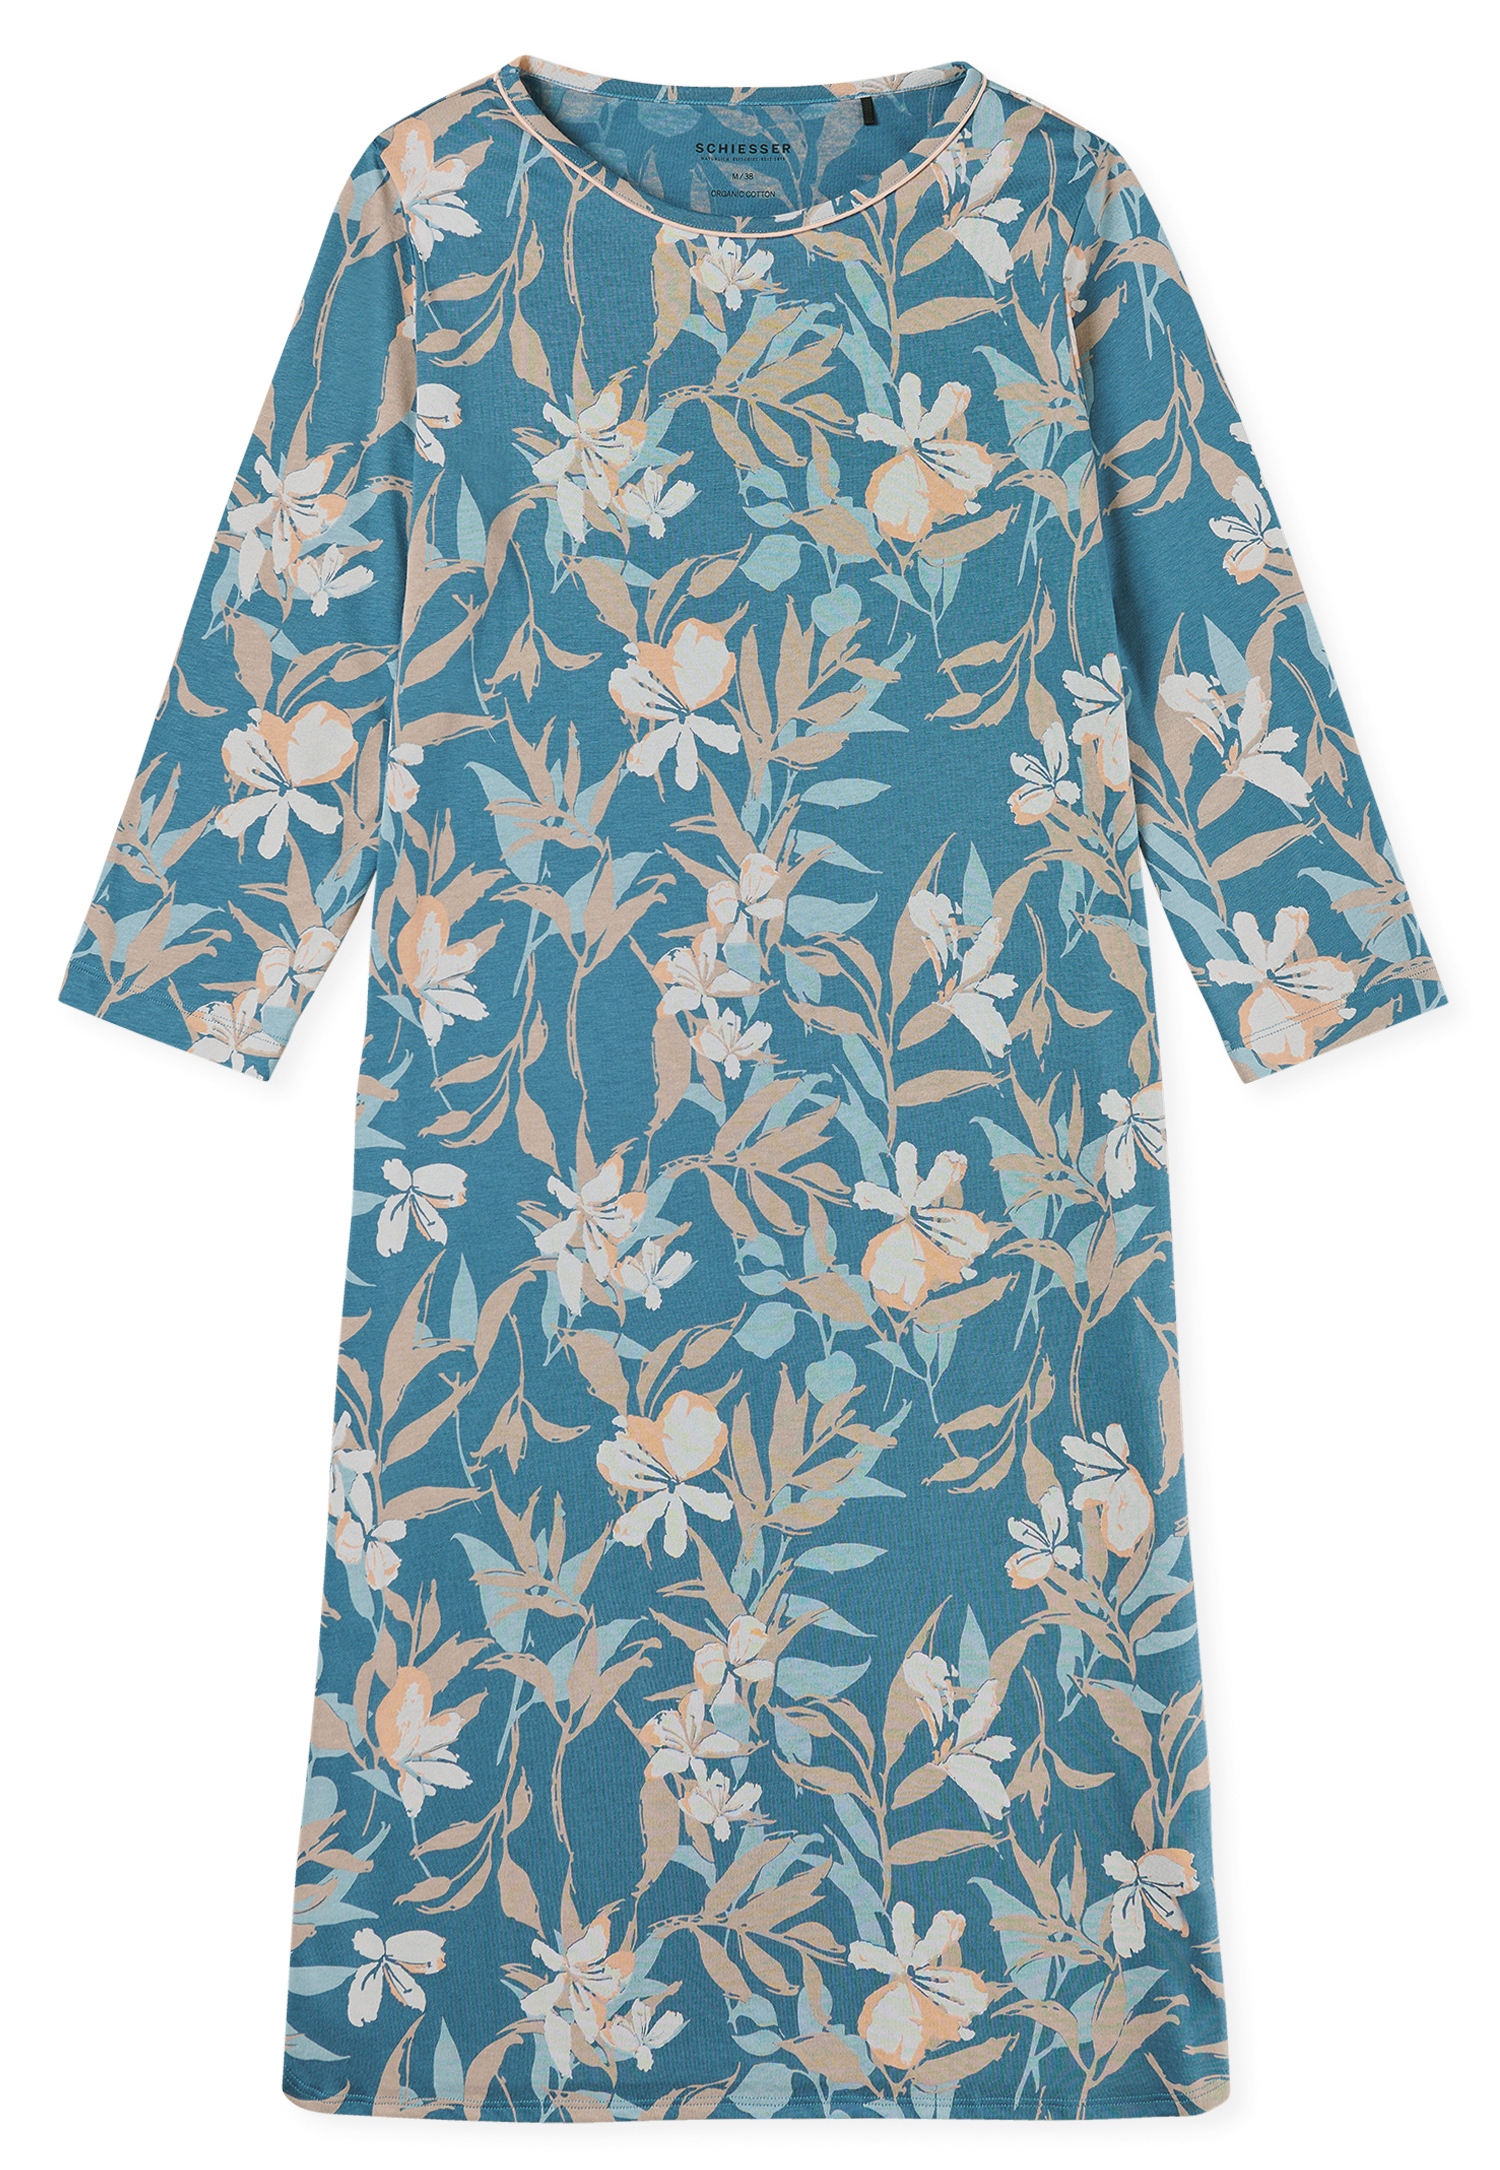 bequemes Damen-Nachthemd in Multicolou-Blumenprint aus Bio-Baumwoll-Modal-Single-Jersey mit 3/4 Arm